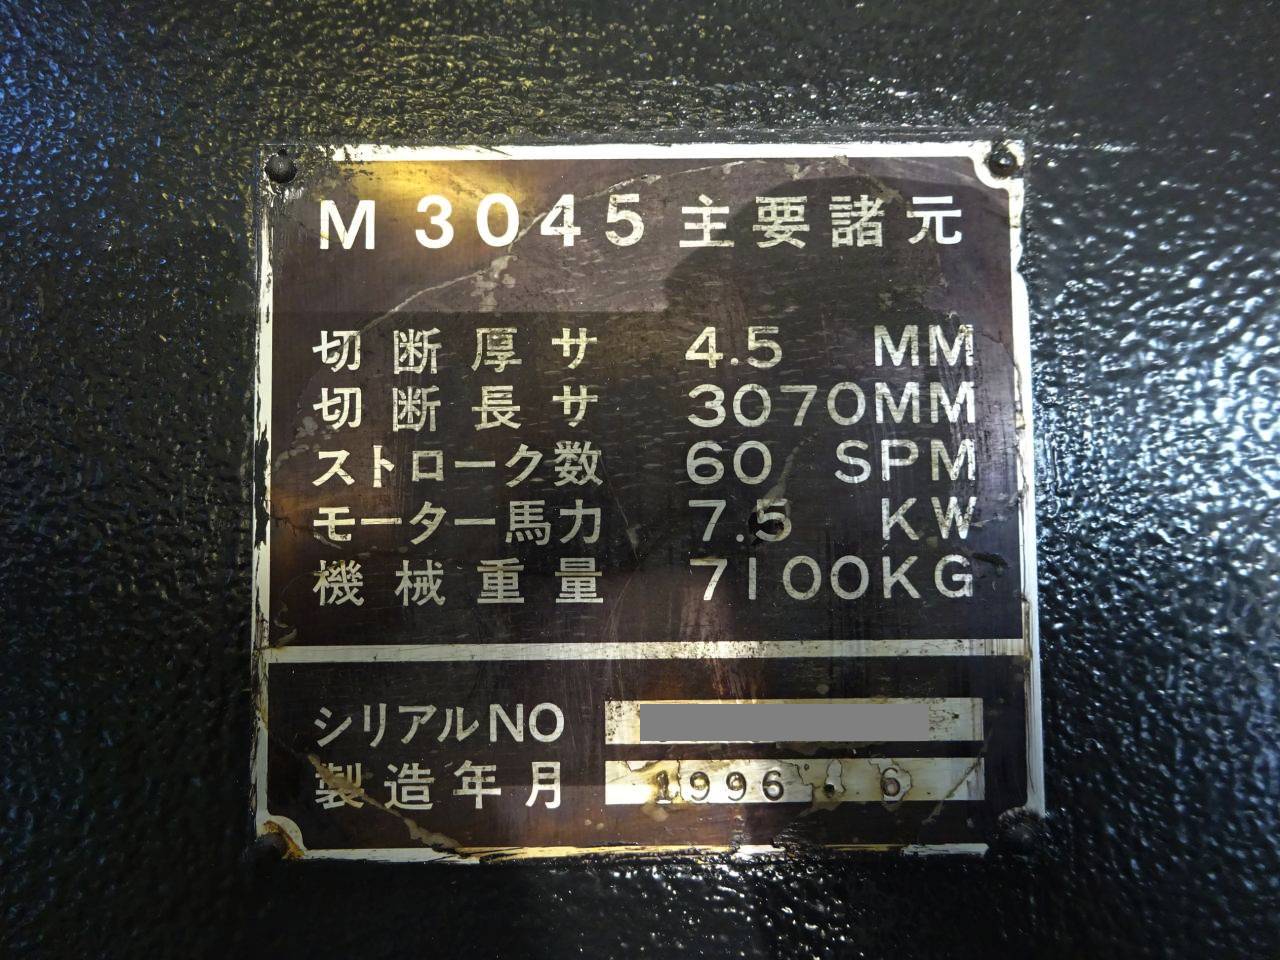 M-3045本体銘板